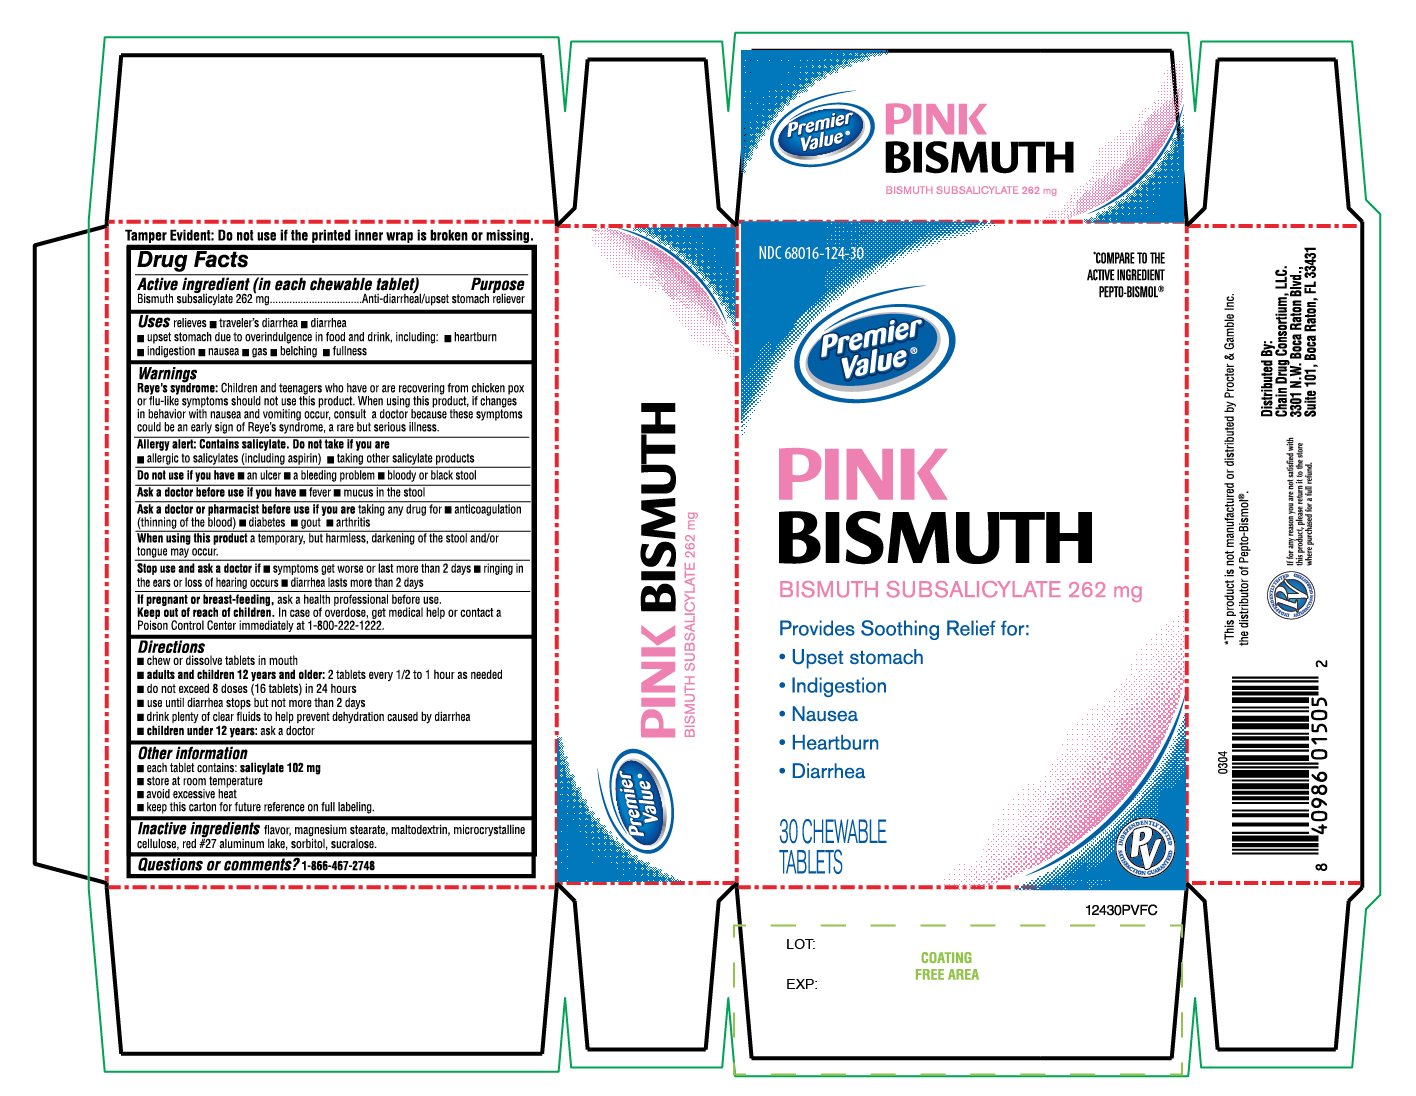 Premier Value Pink Bismuth 30 Chewable tablets